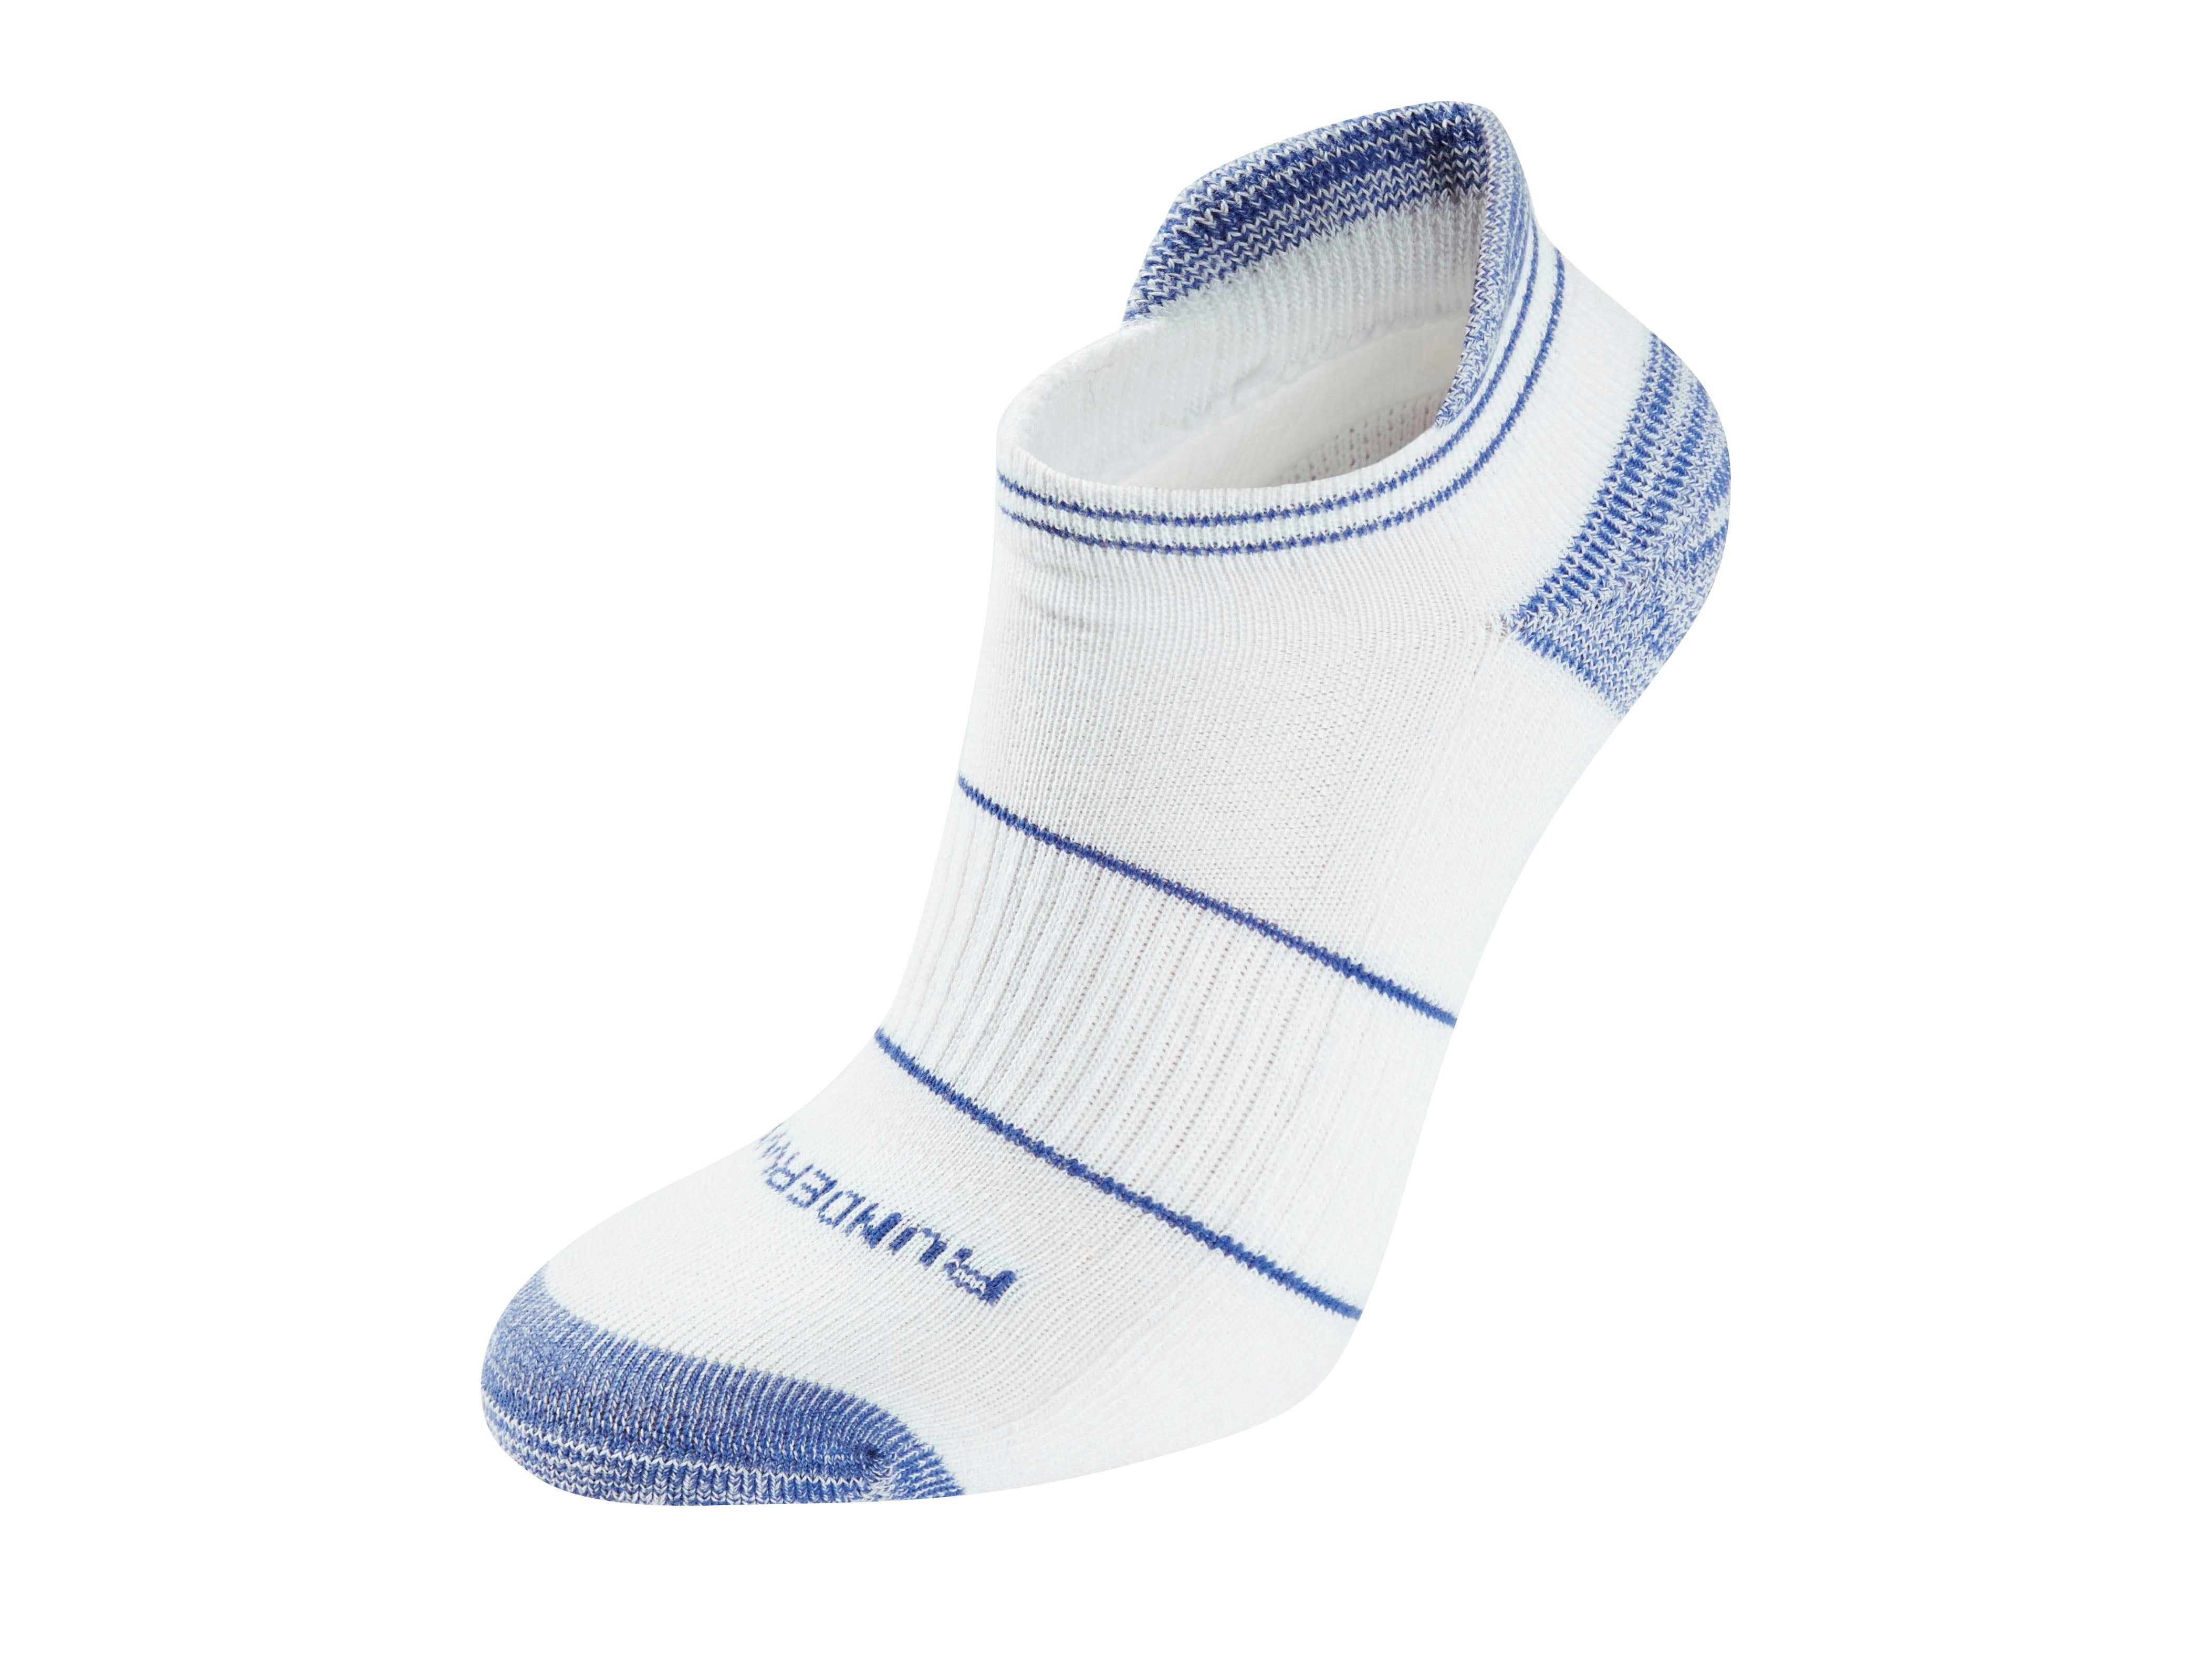 best running socks to prevent blisters